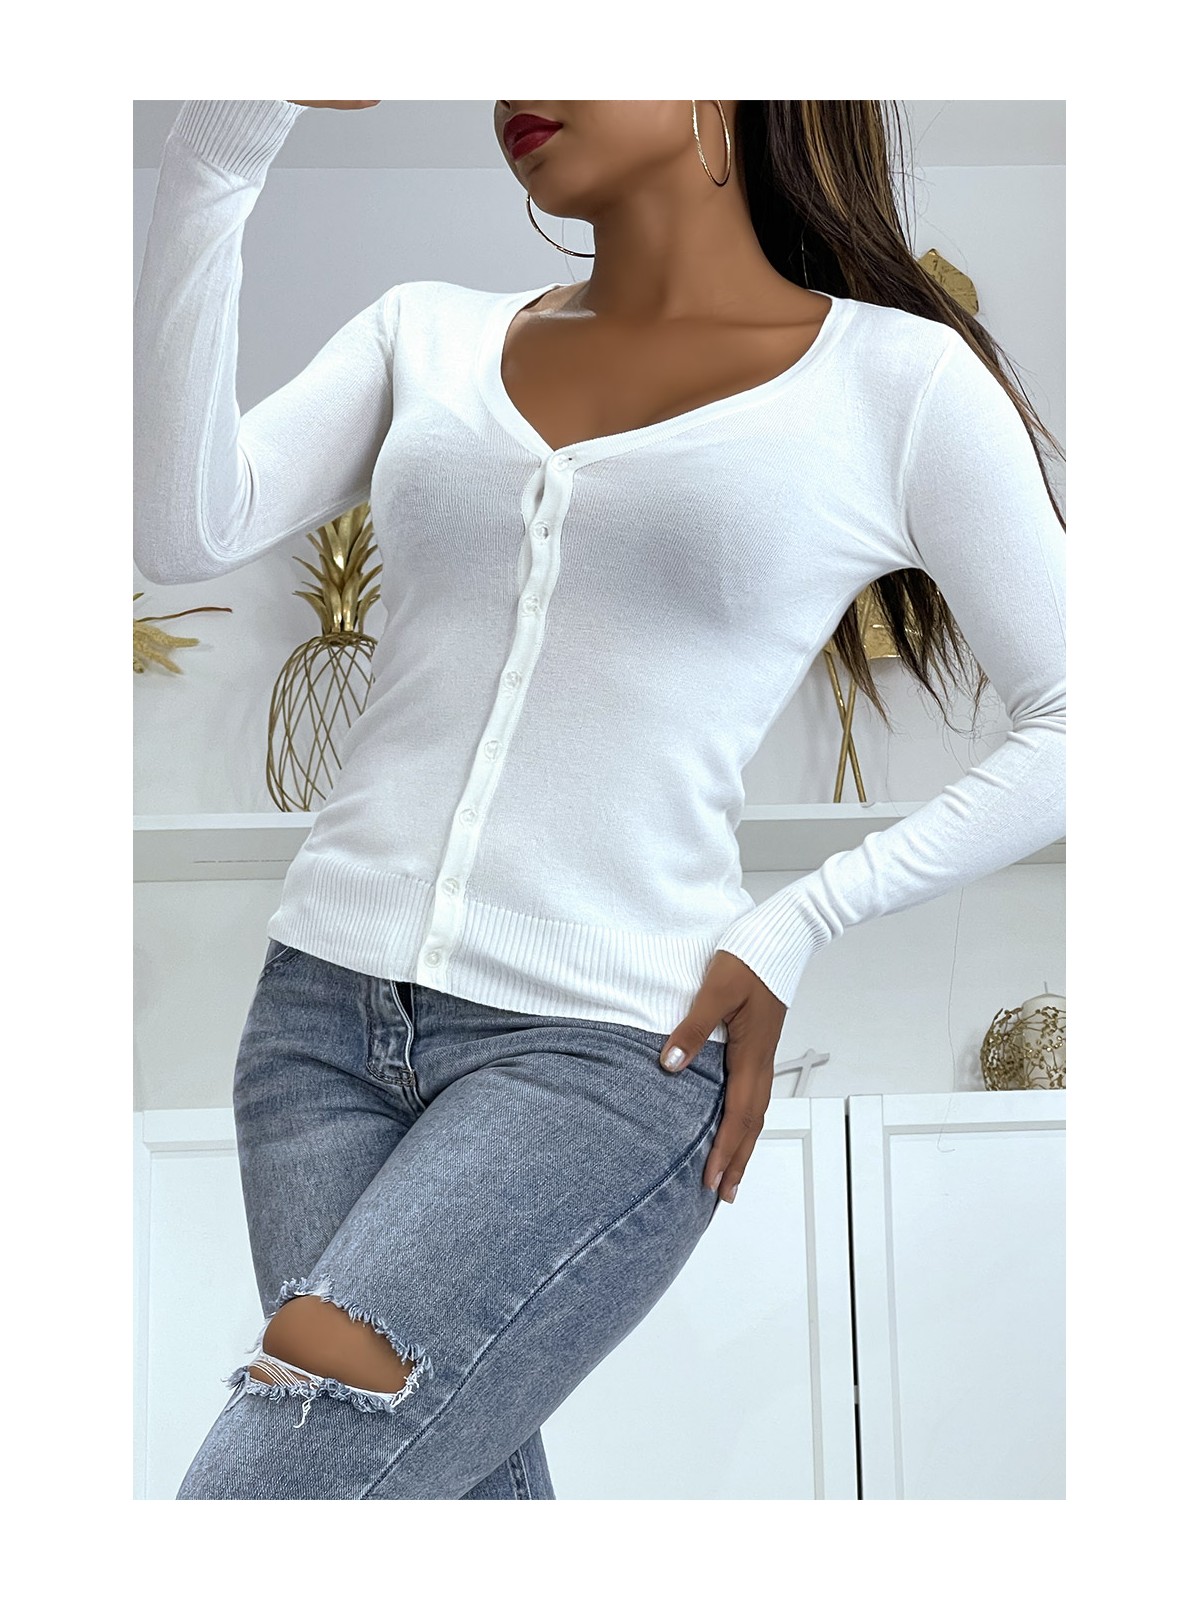 Gilet blanc en maille tricot très extensible et très doux - 5